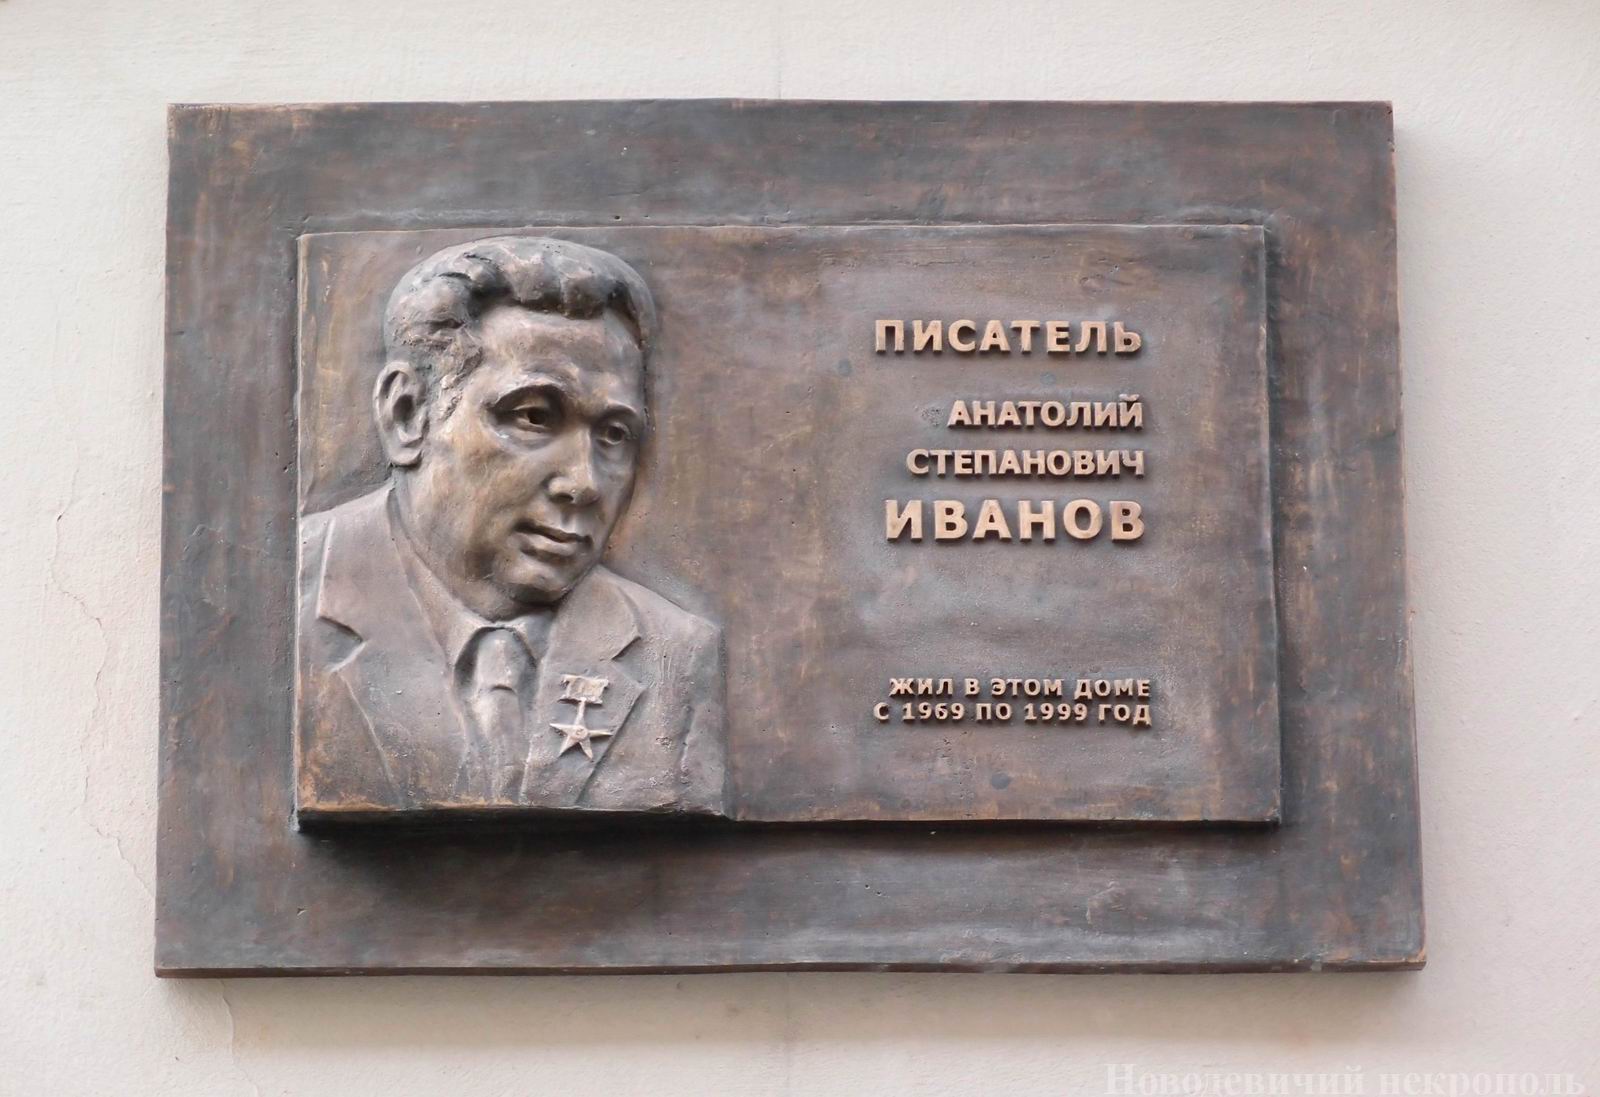 Мемориальная доска Иванову А.С. (1928-1999), ск. Н.Селиванов, во 2-м Обыденском переулке, дом 12, открыта 17.5.2012.